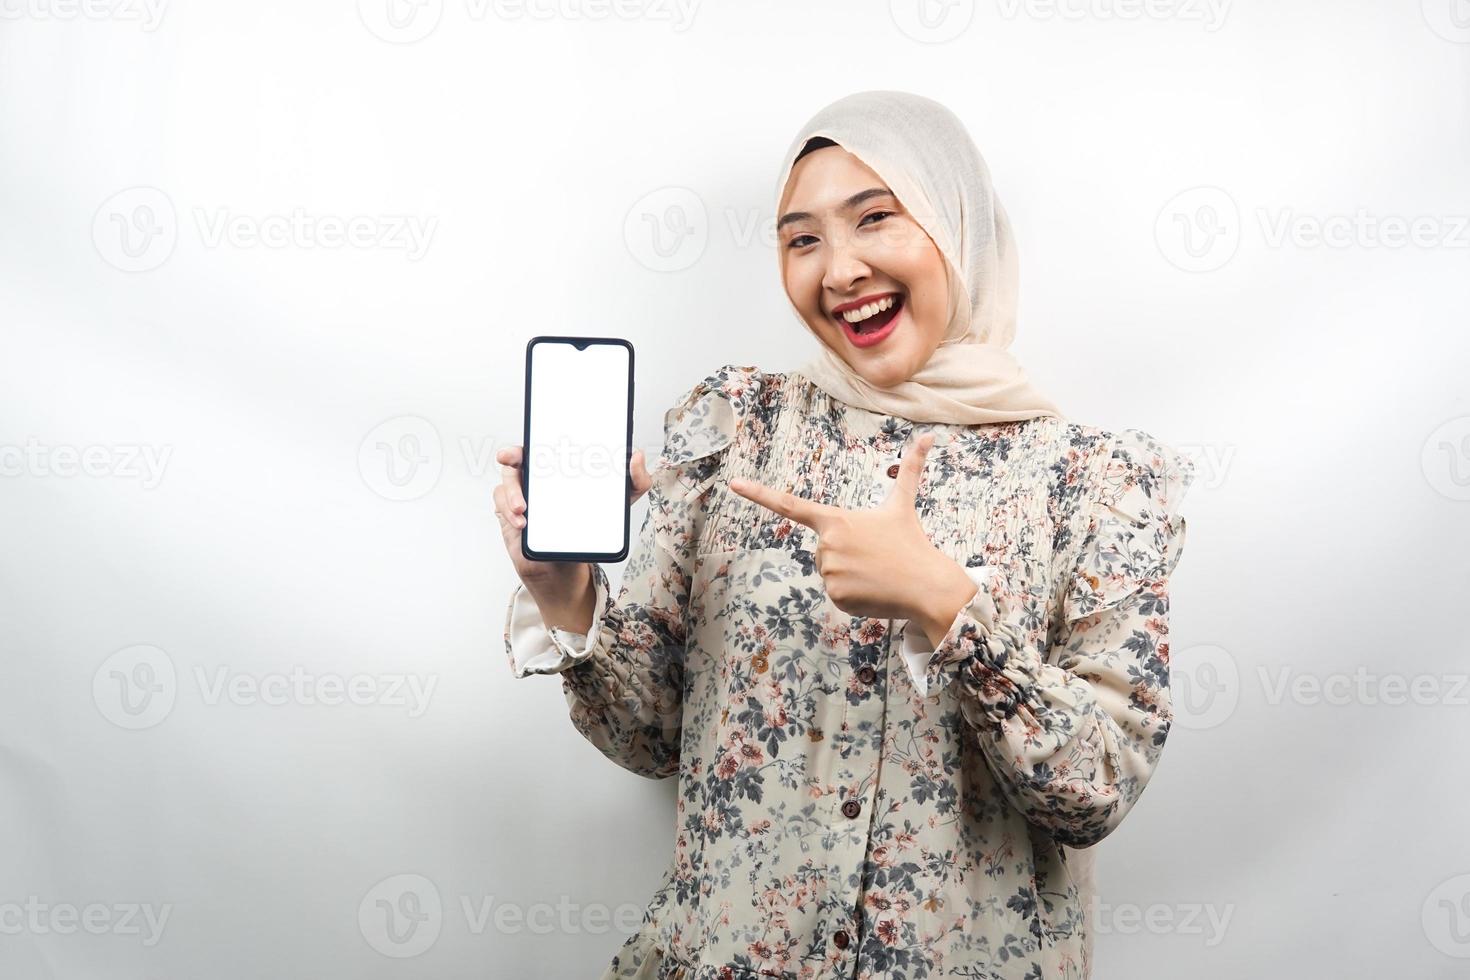 bella giovane donna musulmana asiatica scioccata, sorpresa, espressione wow, mano che tiene smartphone con schermo bianco o vuoto, promozione dell'app, promozione del prodotto, presentazione di qualcosa, isolato foto